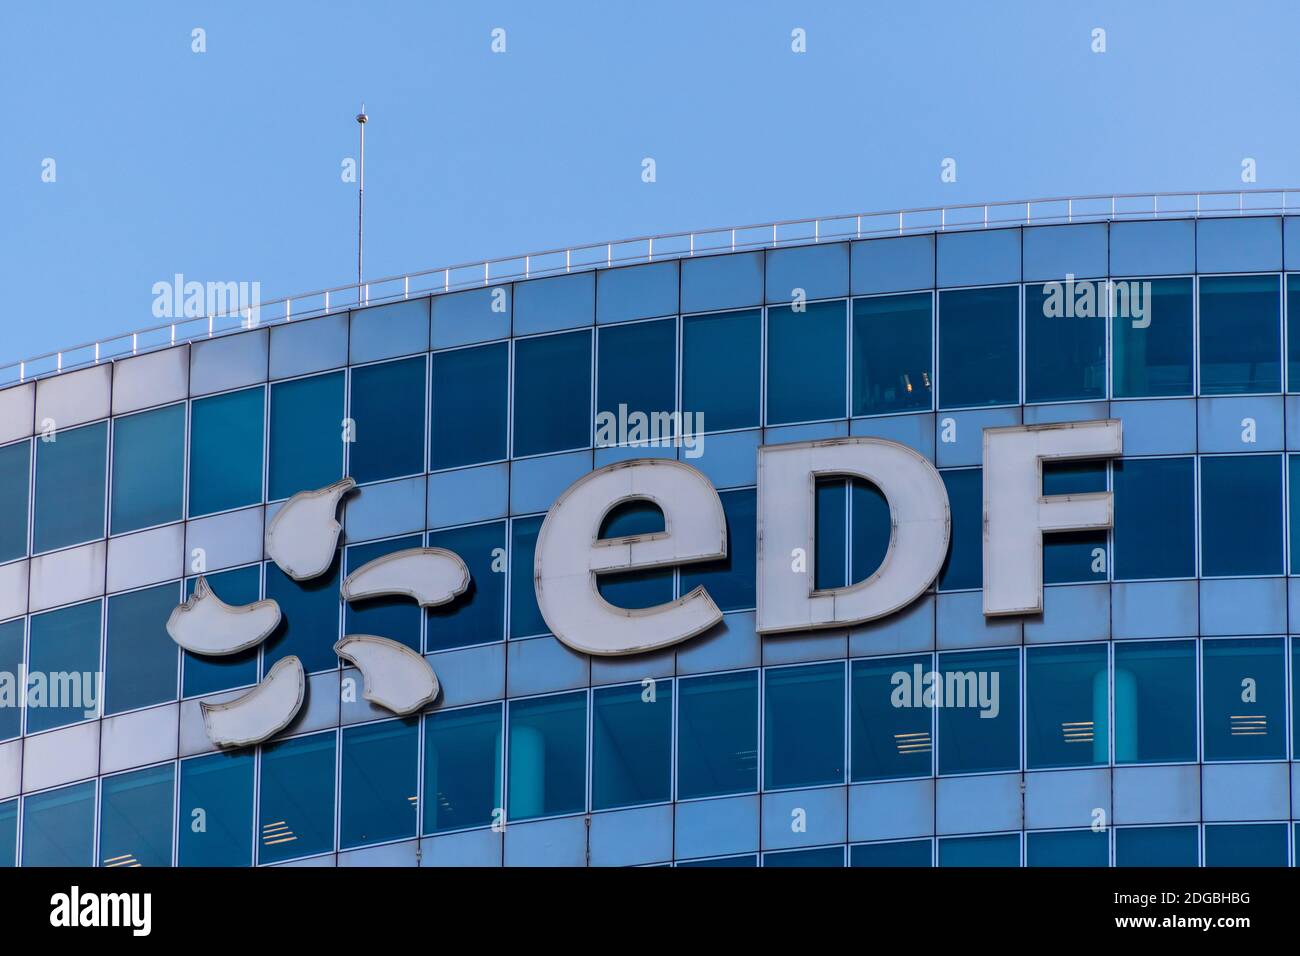 Puteaux, France - 12 novembre 2020 : vue extérieure du haut du bâtiment EDF (électricité de France) à Paris-la Défense Banque D'Images